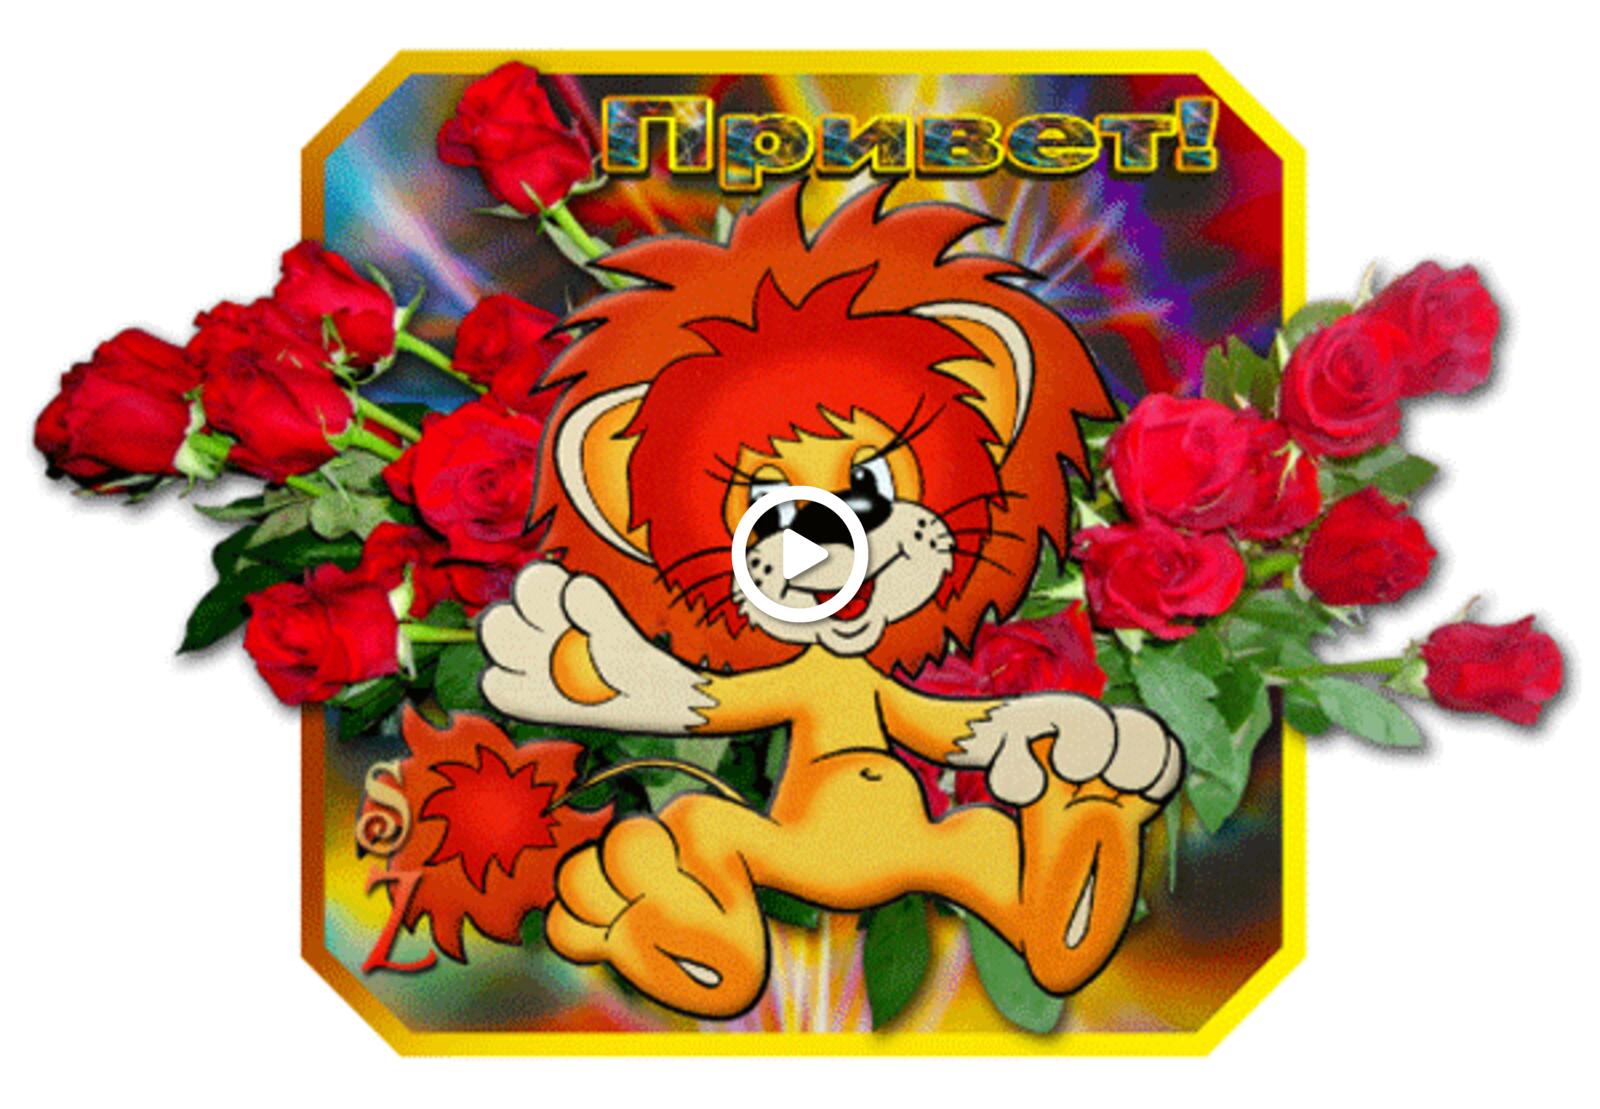 一张以小狮子花 鲜花 红玫瑰为主题的明信片